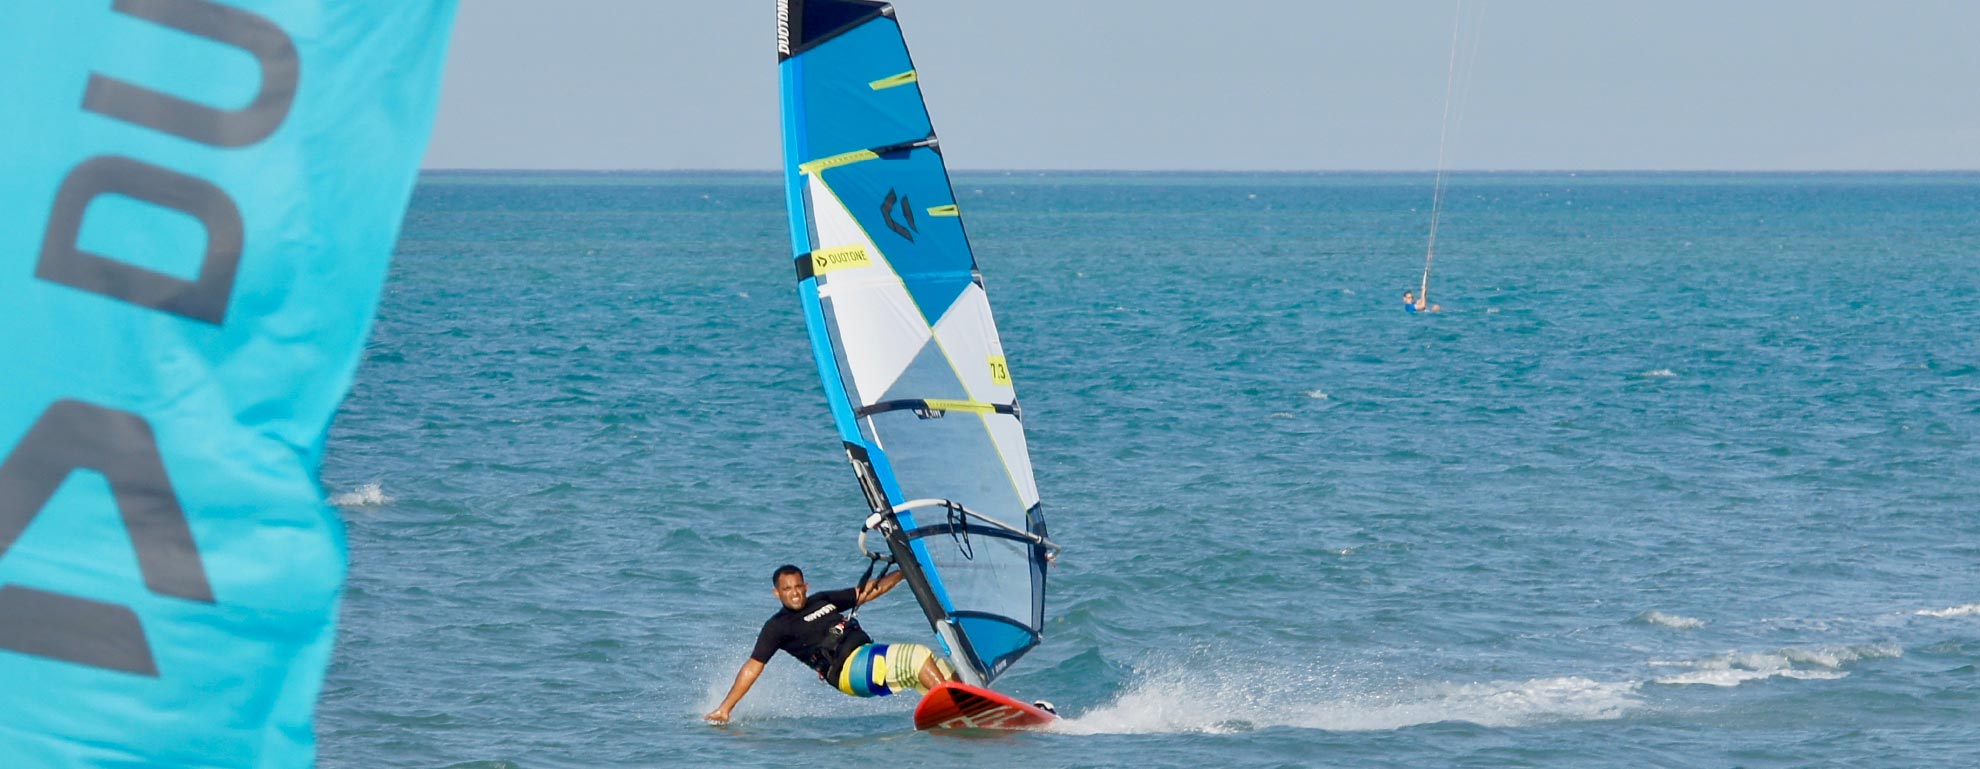 windsurf spot el gouna bg